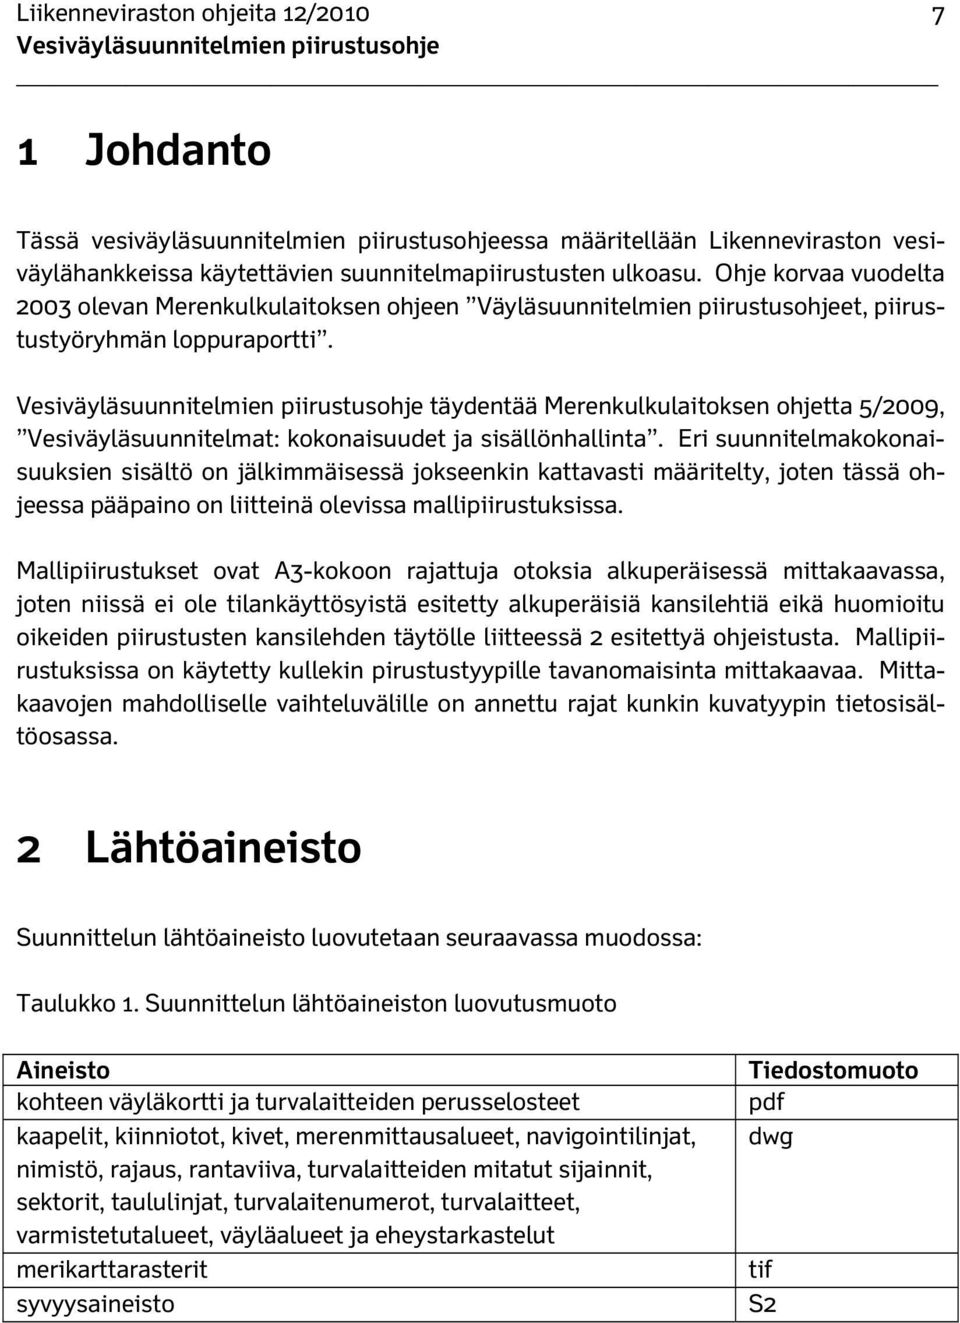 Vesiväyläsuunnitelmien piirustusohje täydentää Merenkulkulaitoksen ohjetta 5/2009, Vesiväyläsuunnitelmat: kokonaisuudet ja sisällönhallinta.